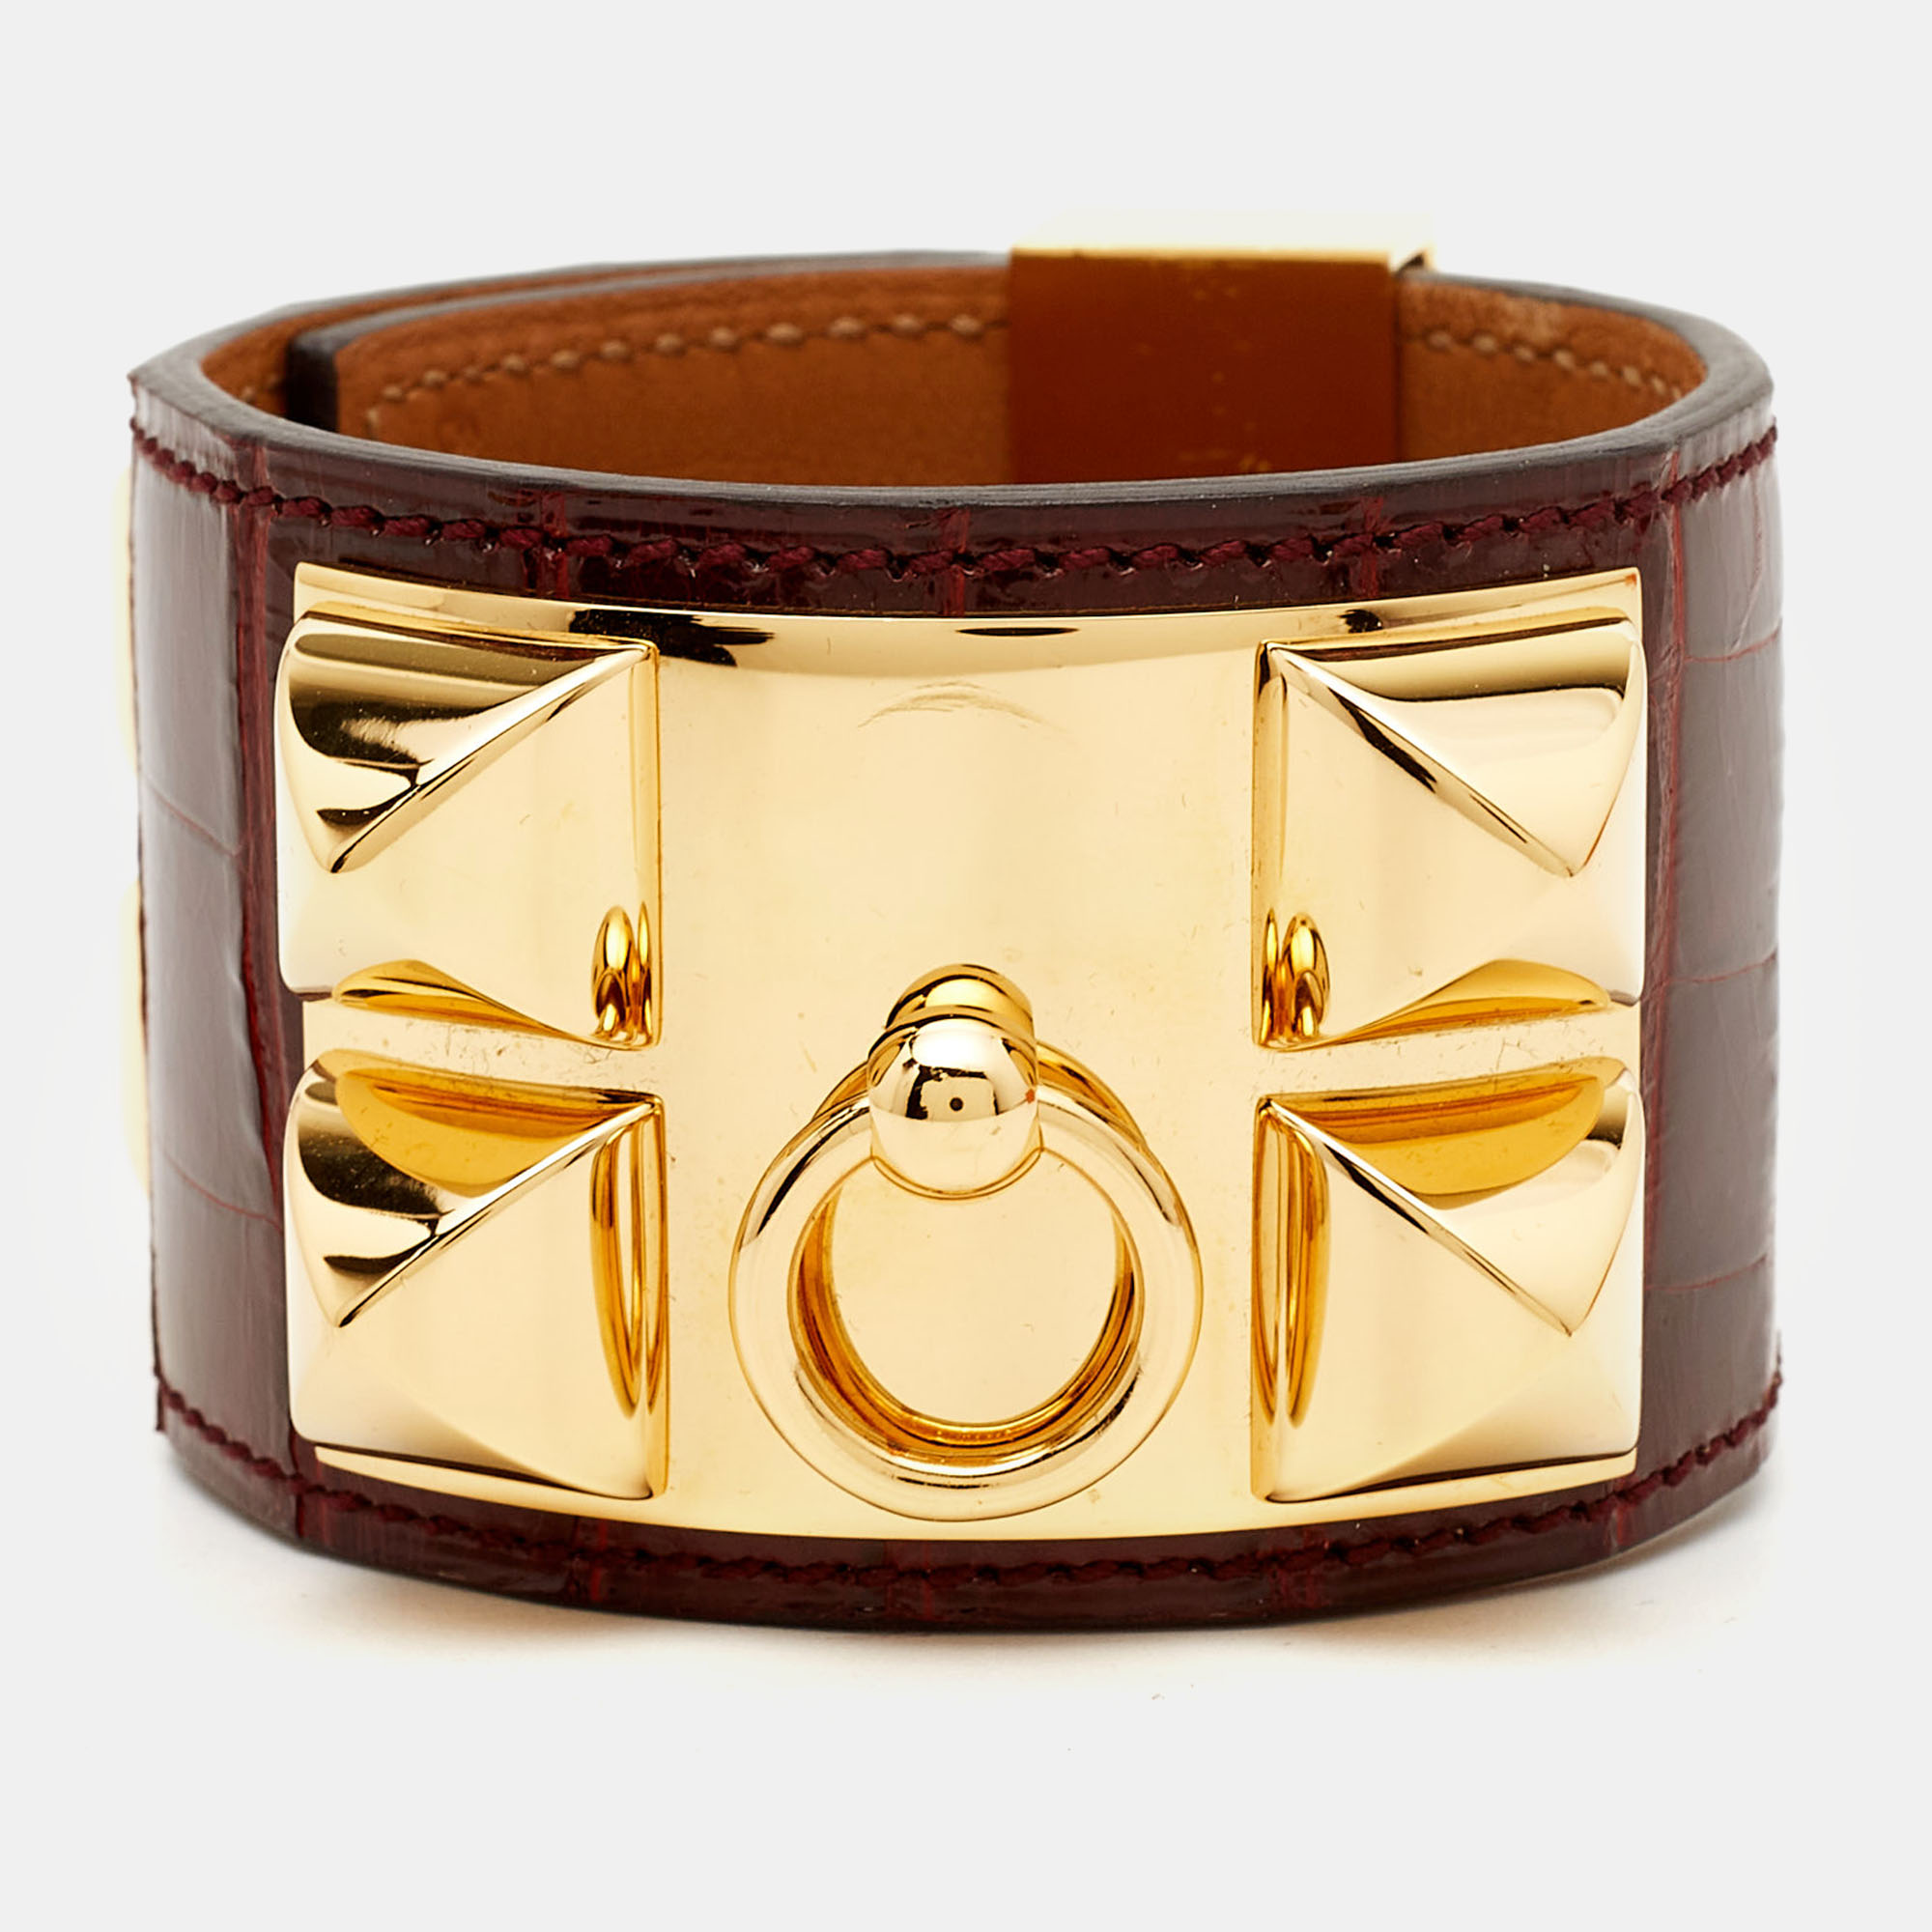 

Hermes Collier De Chien Alligator Leather Gold Plated Bracelet, Burgundy